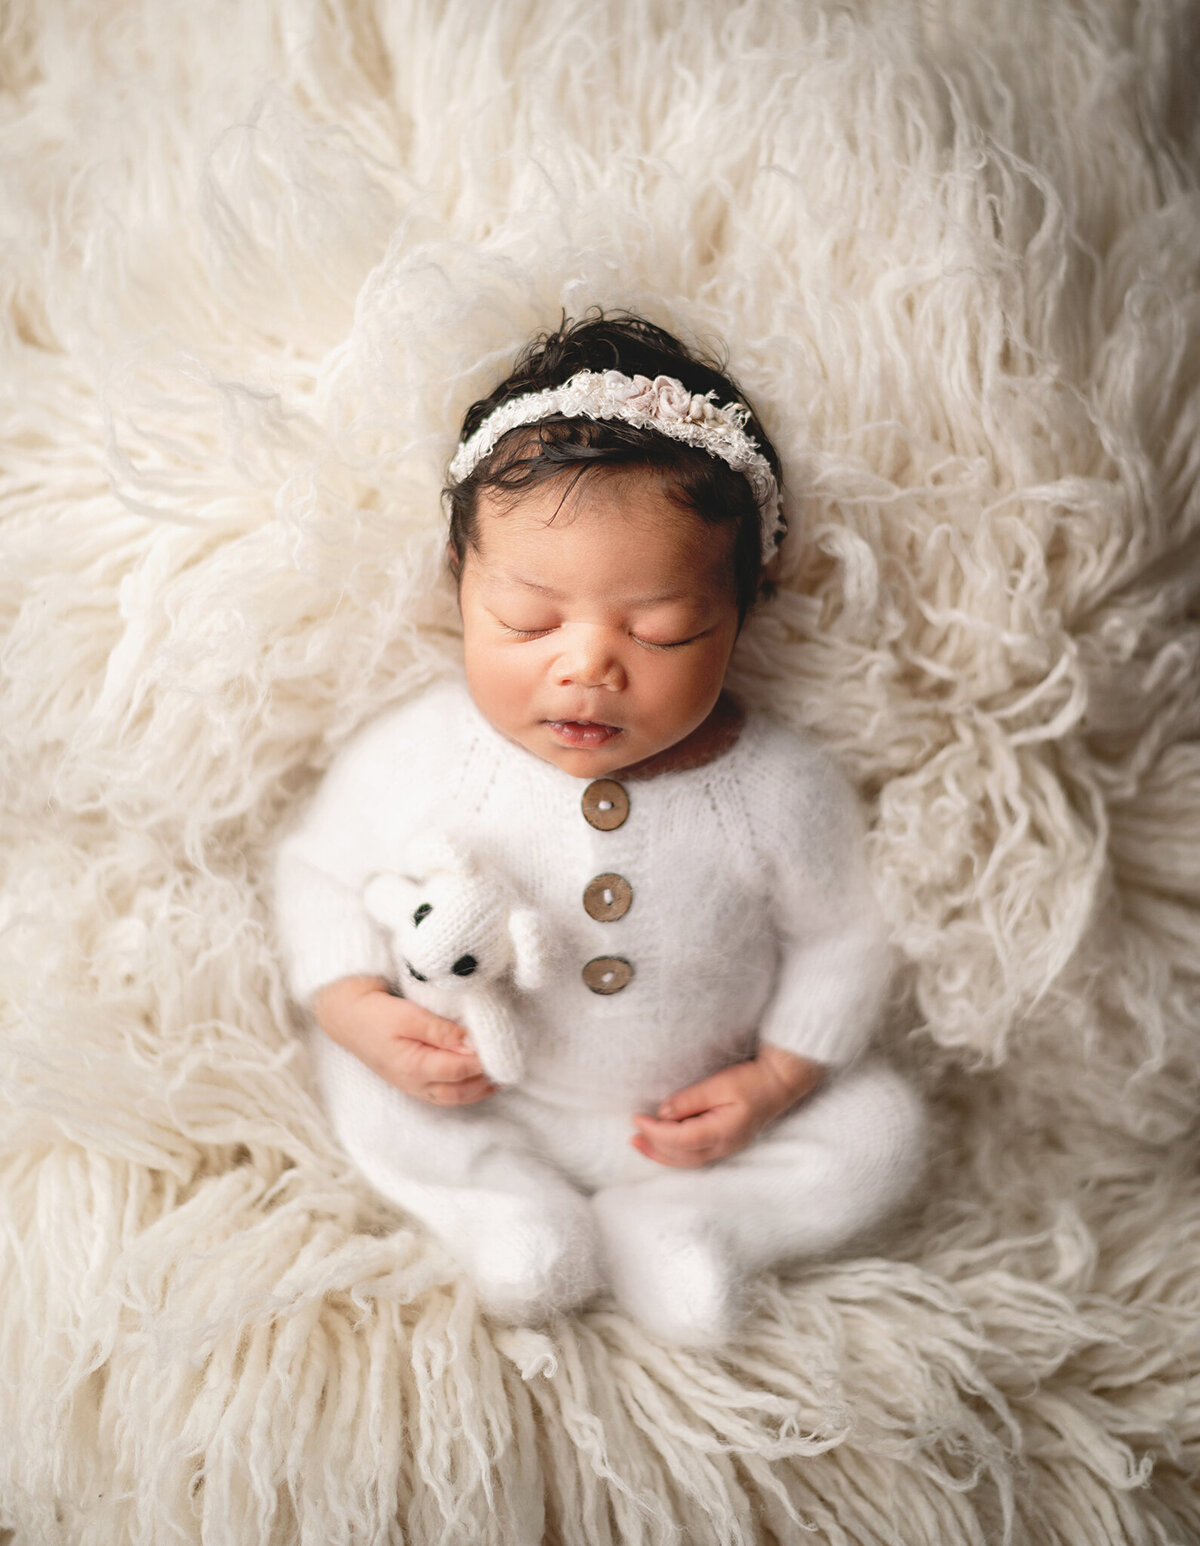 Toronto Photo Newborn girl session in white fuzzy sleeper holding a teddy on a white flokati fur.